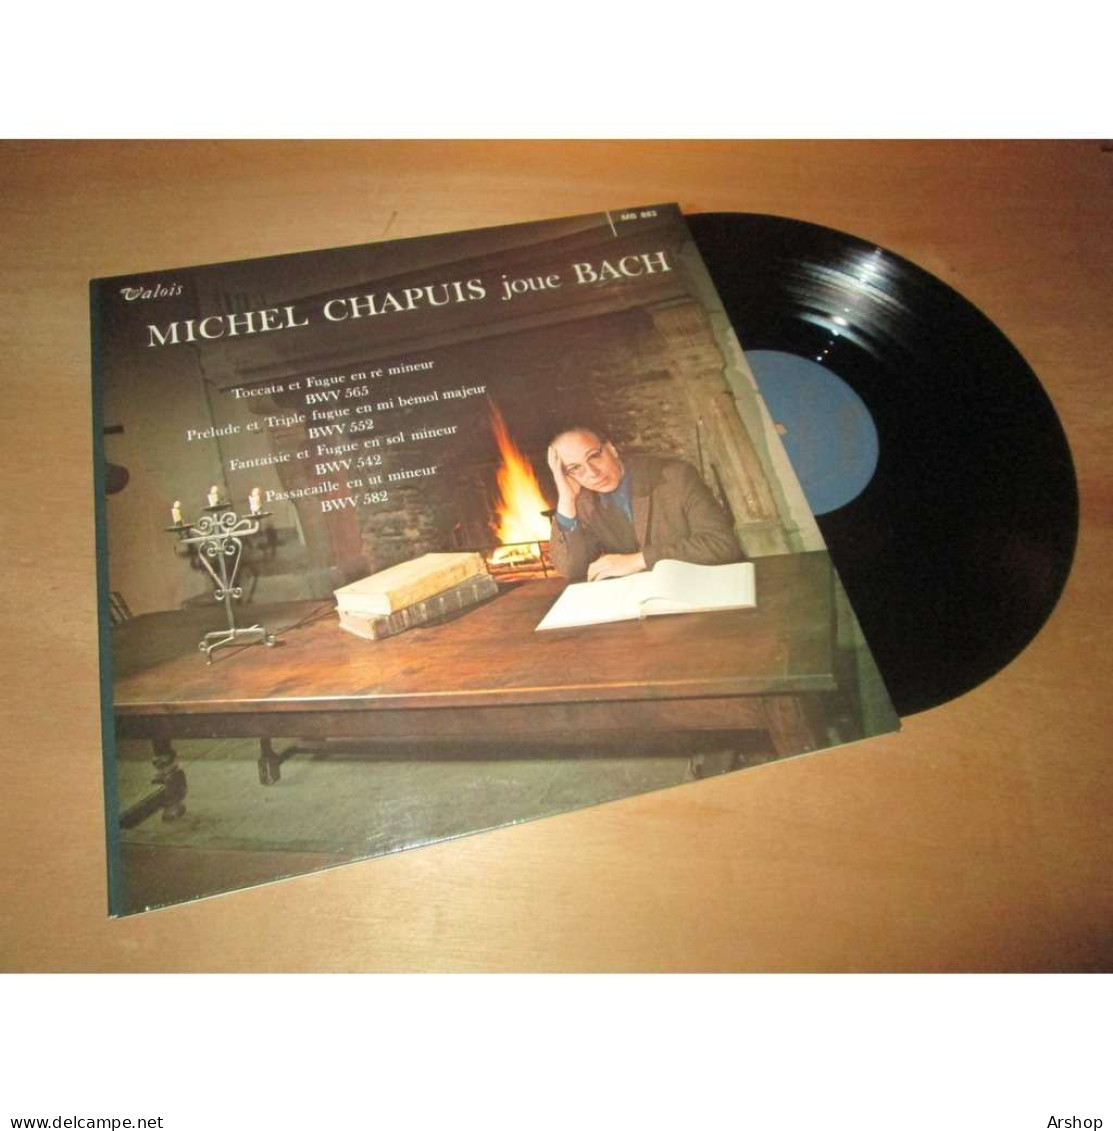 MICHEL CHAPUIS Joue BACH -  VALOIS MB 883 Lp - Classical